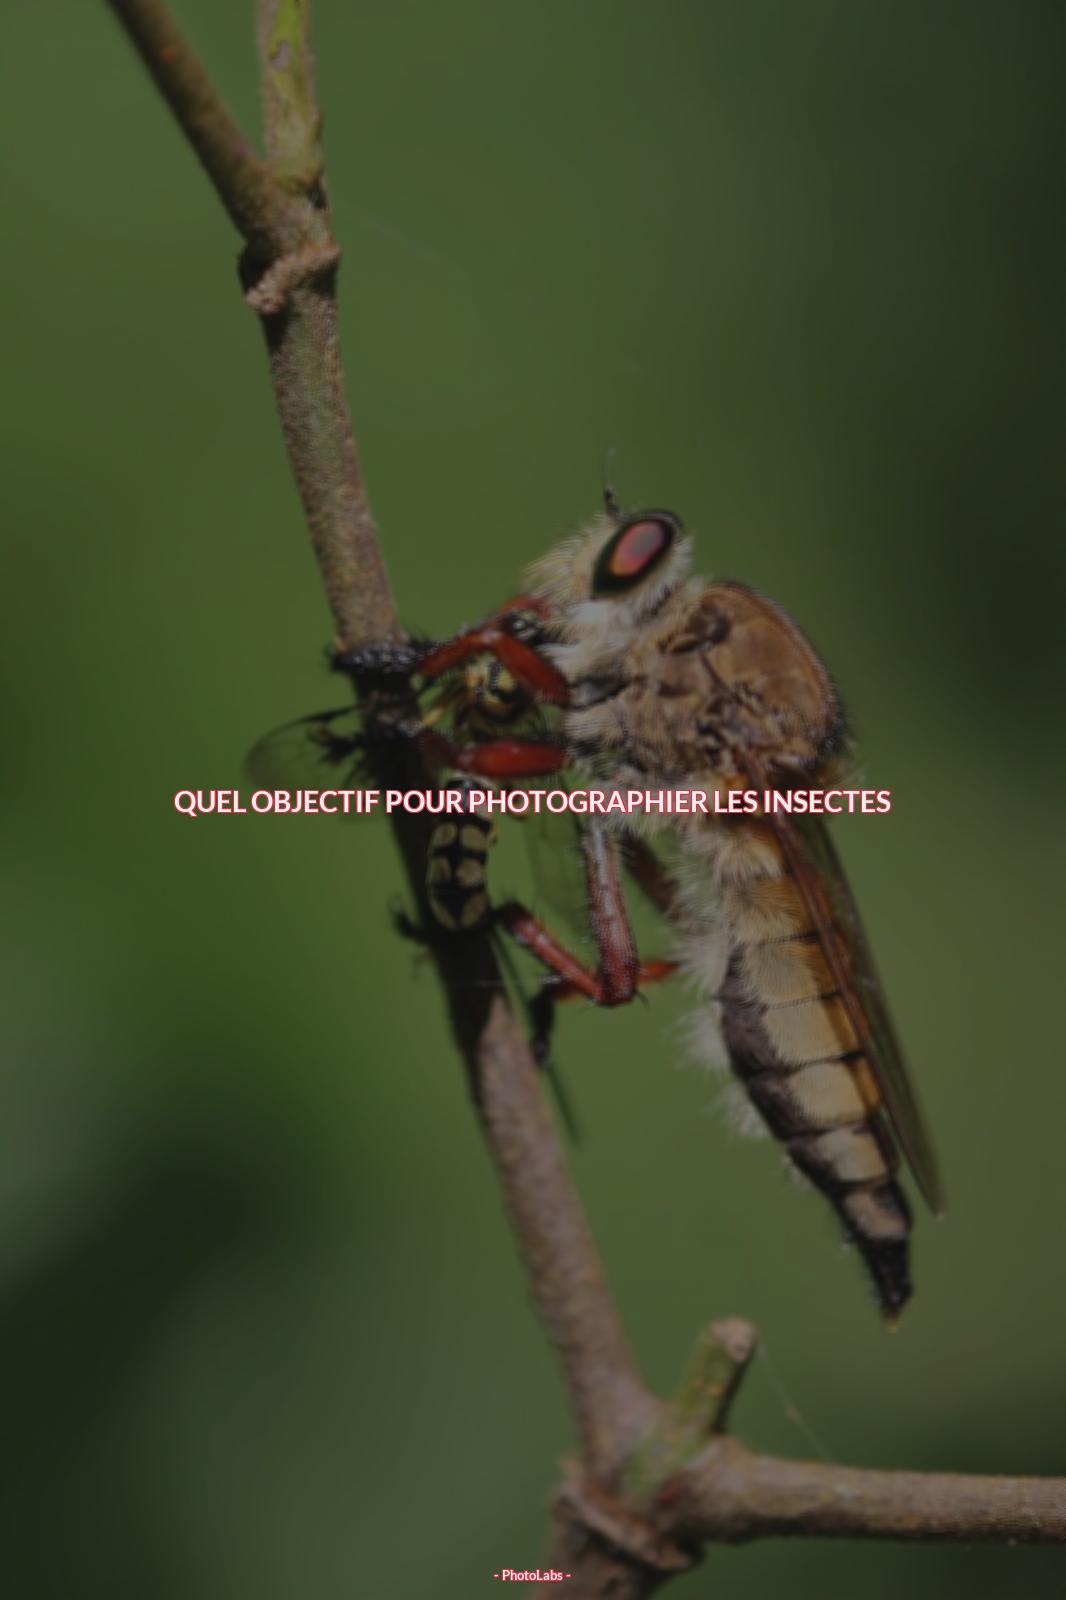 Quel objectif pour photographier les insectes ?